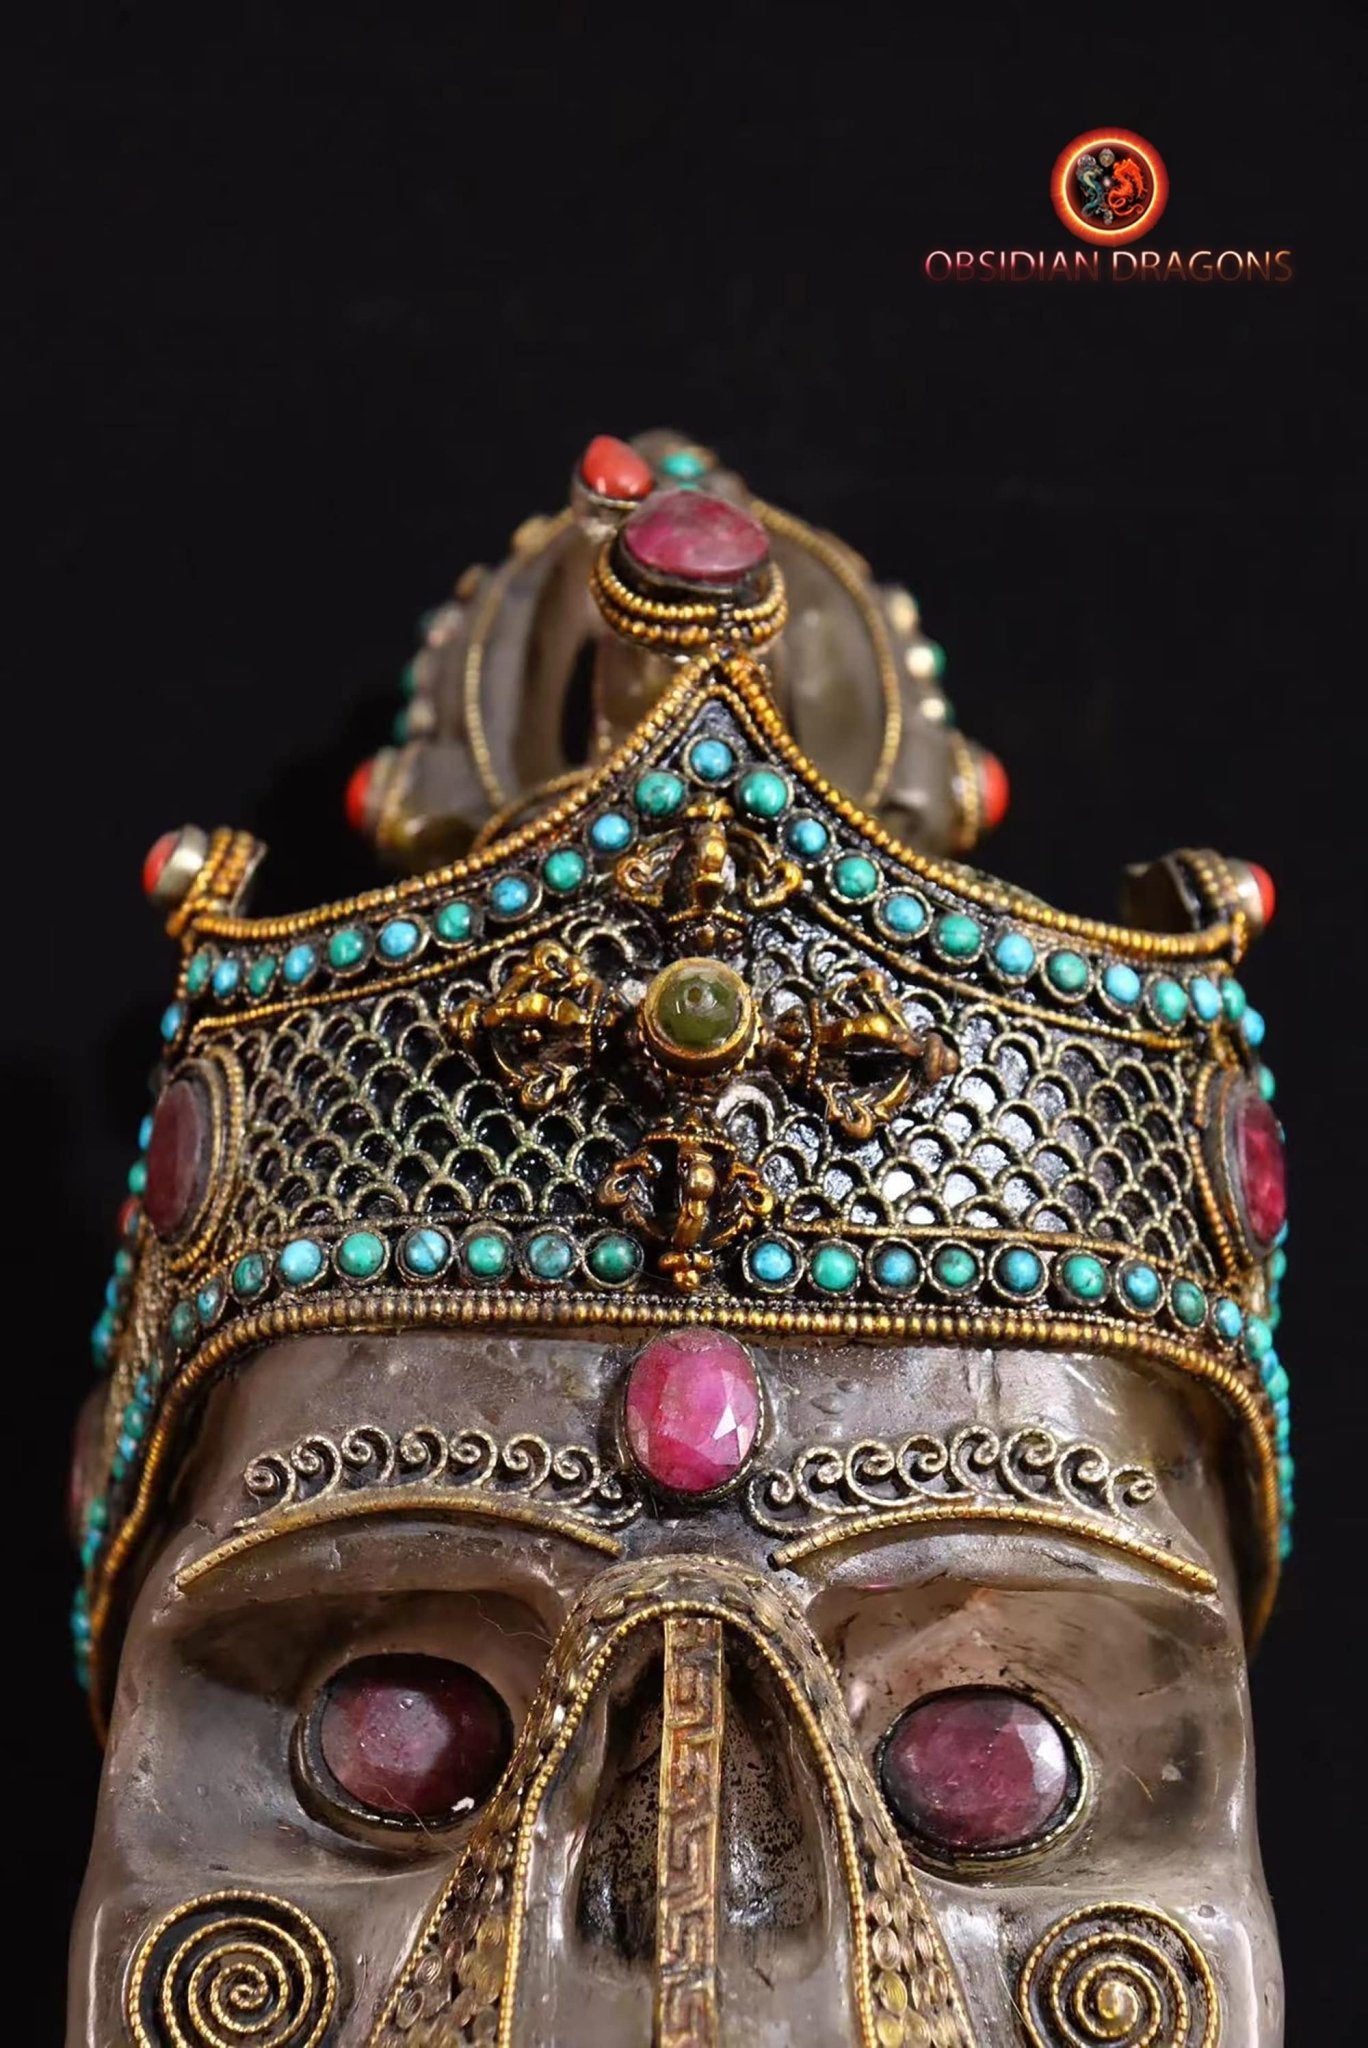 Grand crâne de cristal tibétain authentique- cérémonie tantrique